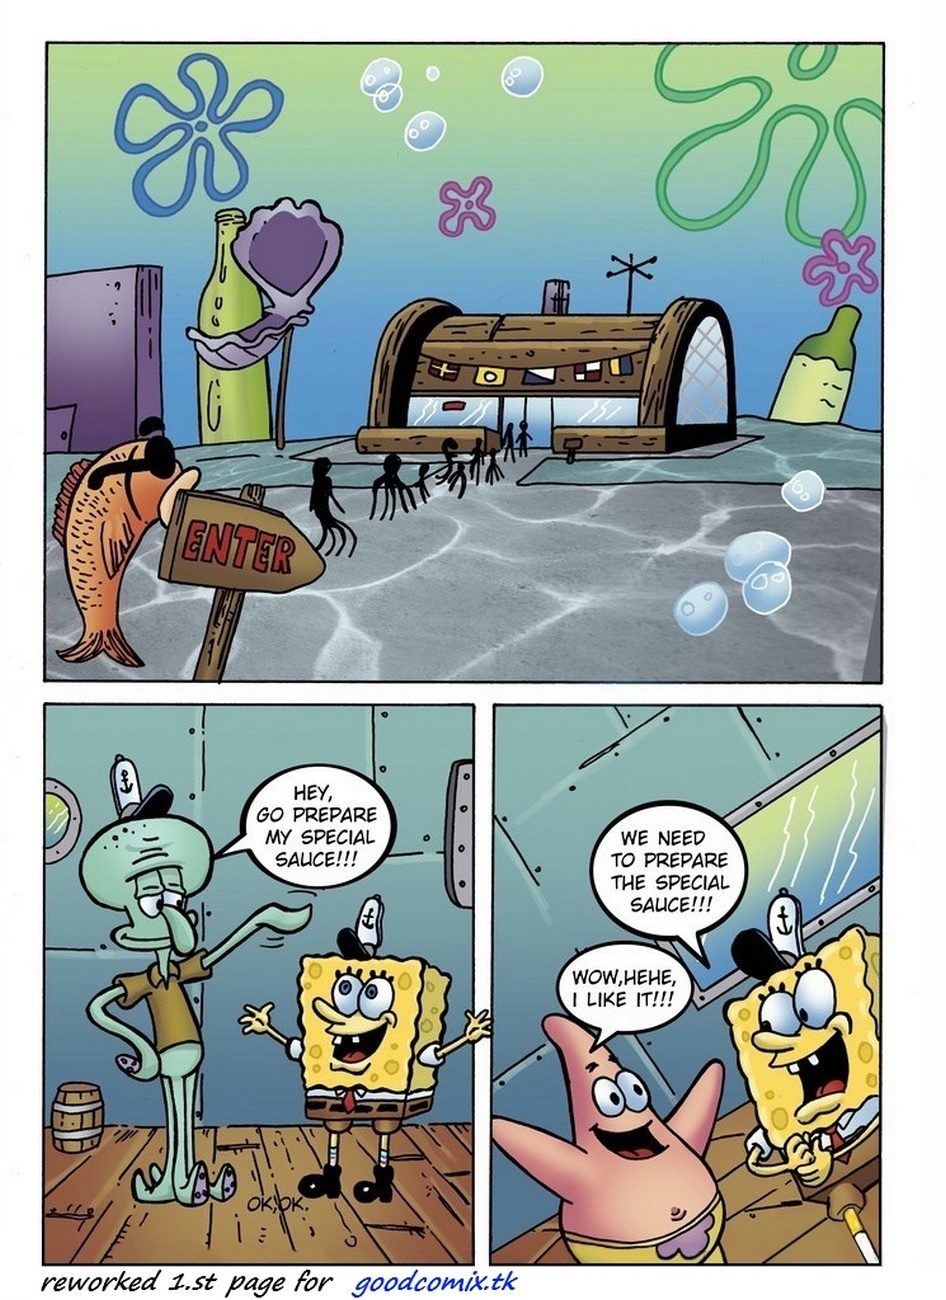 Spongebob Cartoon Porn Comics